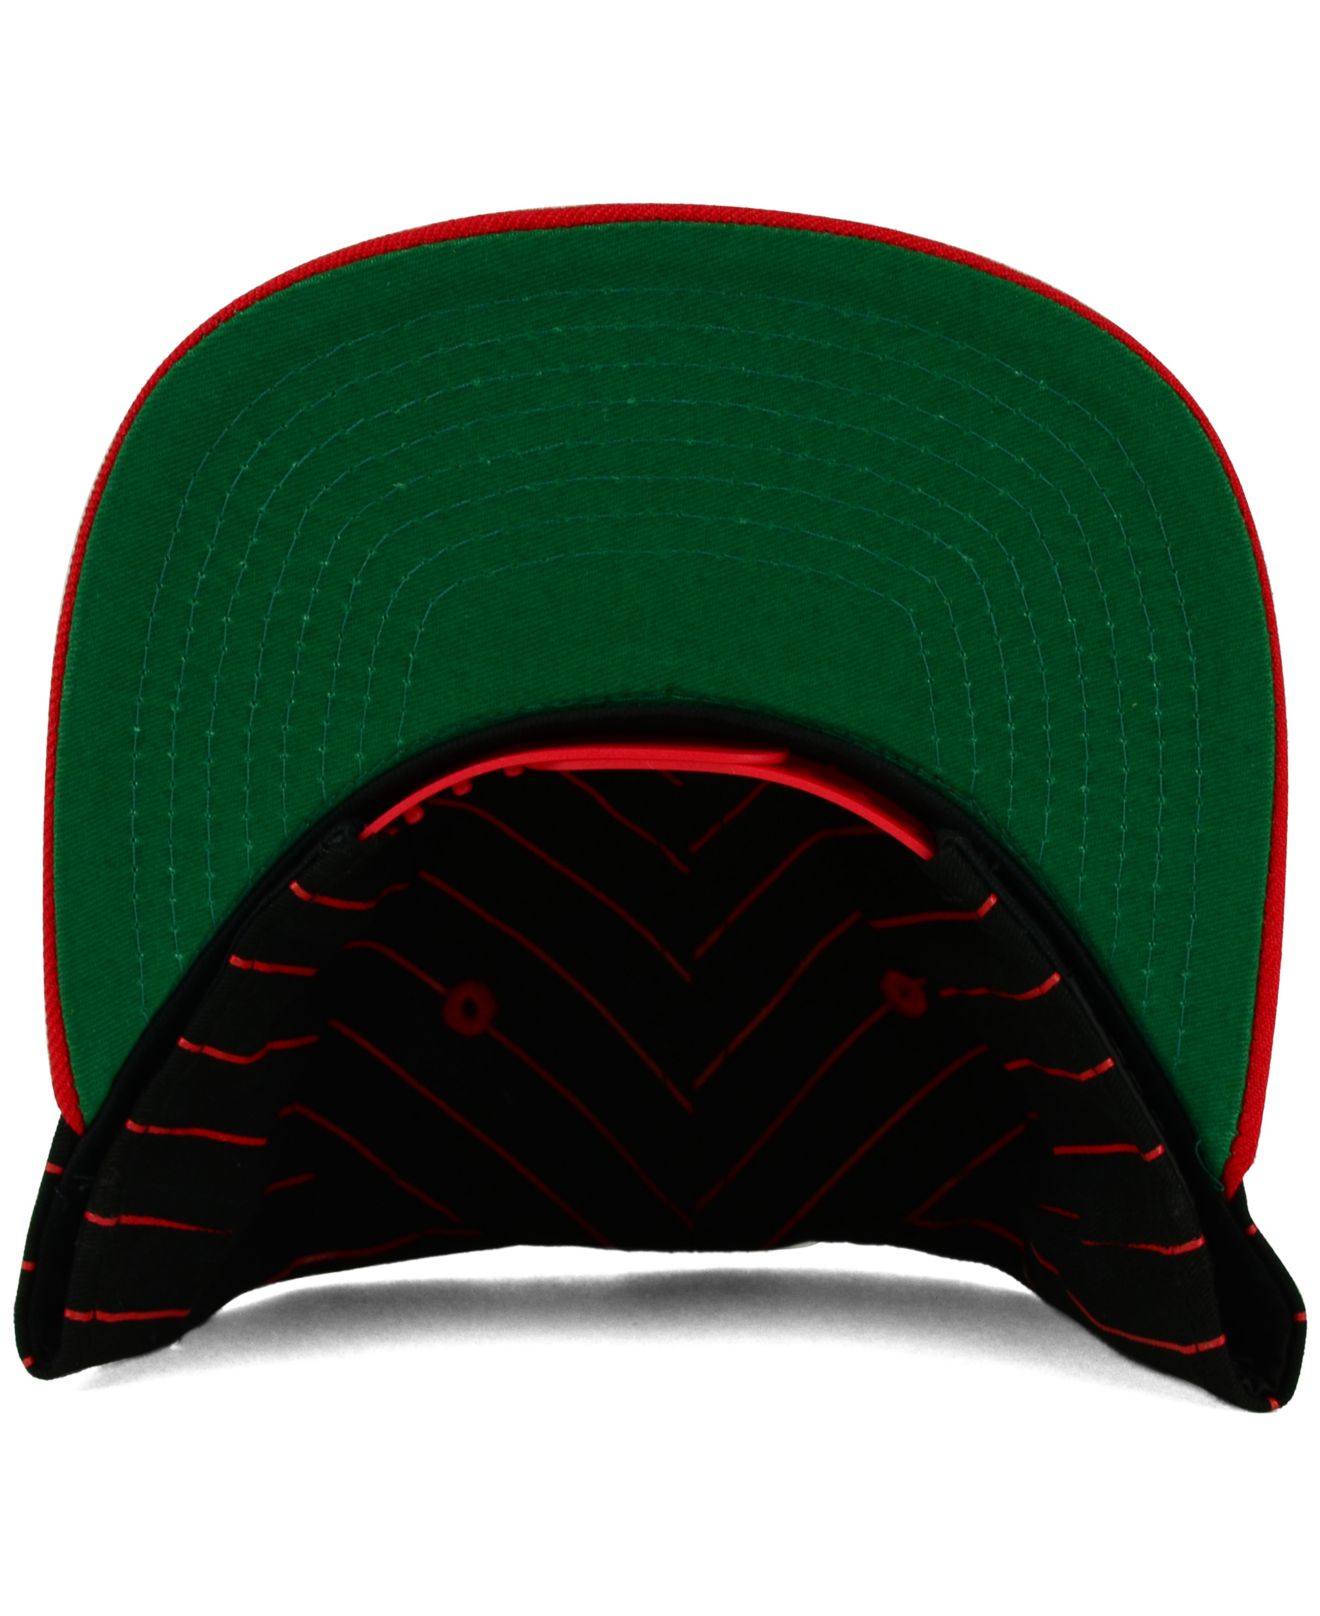 St. Louis Cardinals NFL AJD Vintage Super Stripes Snapback Hat